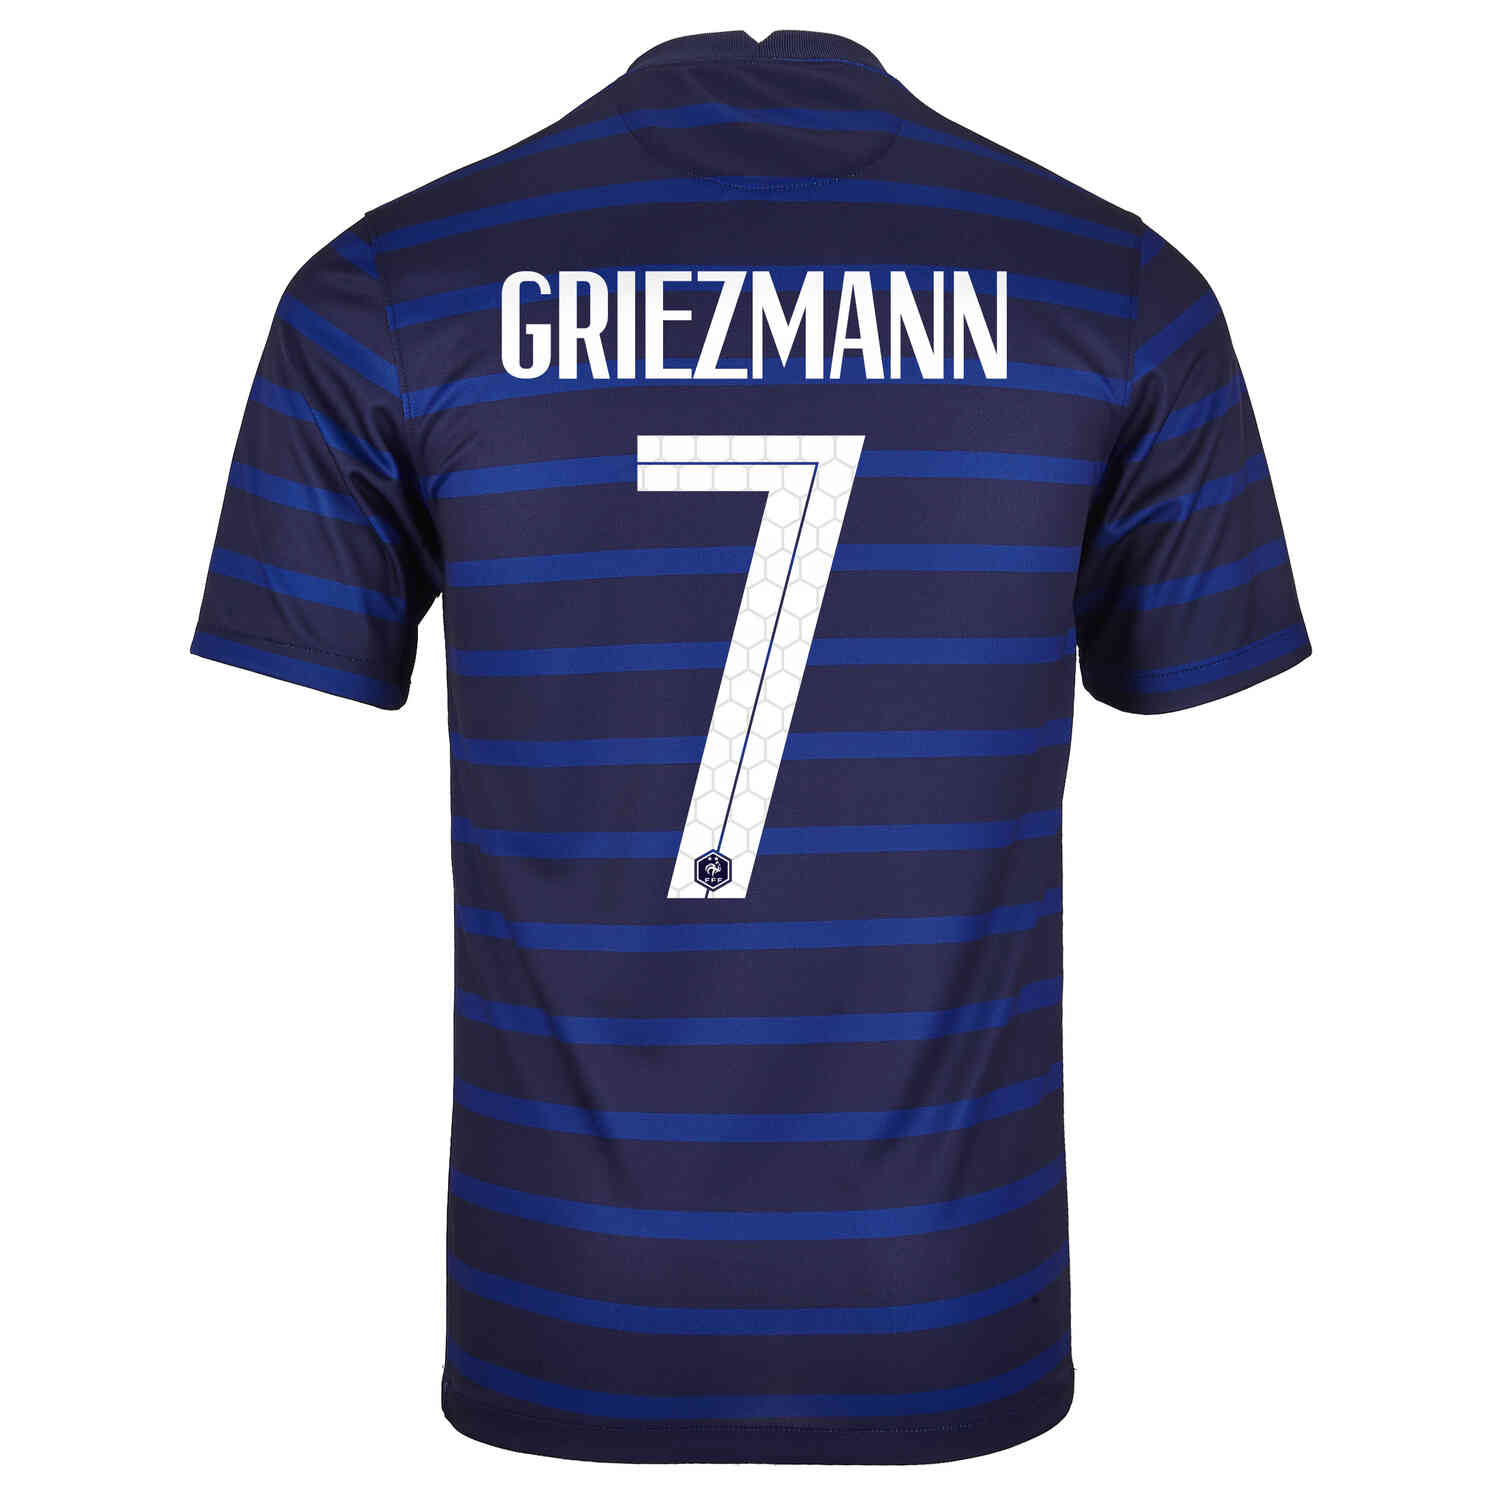 2020 Nike Antoine Griezmann France Home Jersey - SoccerPro